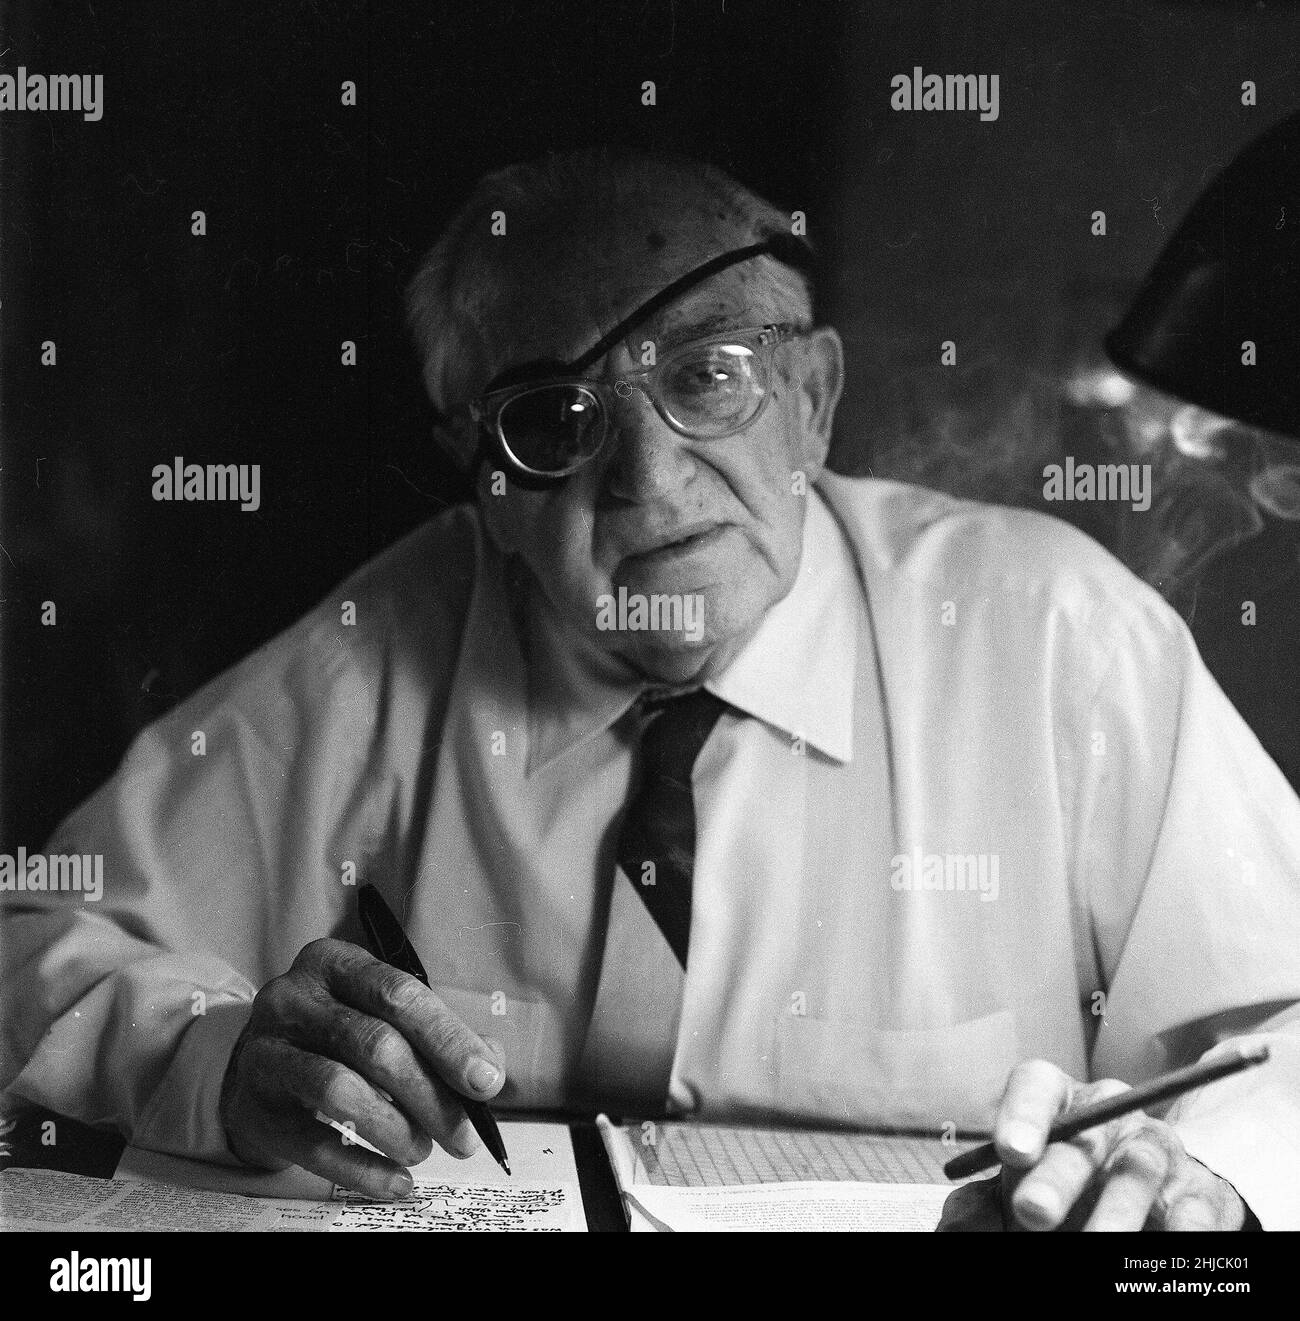 Fritz Lang (1890-1976) a Beverly Hills, 1965. Lang era un regista, sceneggiatore e occasionale produttore e attore austriaco. Uno dei √ più conosciuti√ della scuola tedesca di espressionismo, è stato soprannominato il "Master of Darkness" dal British Film Institute. I suoi film più famosi includono l'innovativo Metropolis (il film silenzioso più costoso al mondo al momento della sua uscita), e M, fatto prima di trasferirsi negli Stati Uniti, che è considerato il precursore del film noir genere. Foto Stock